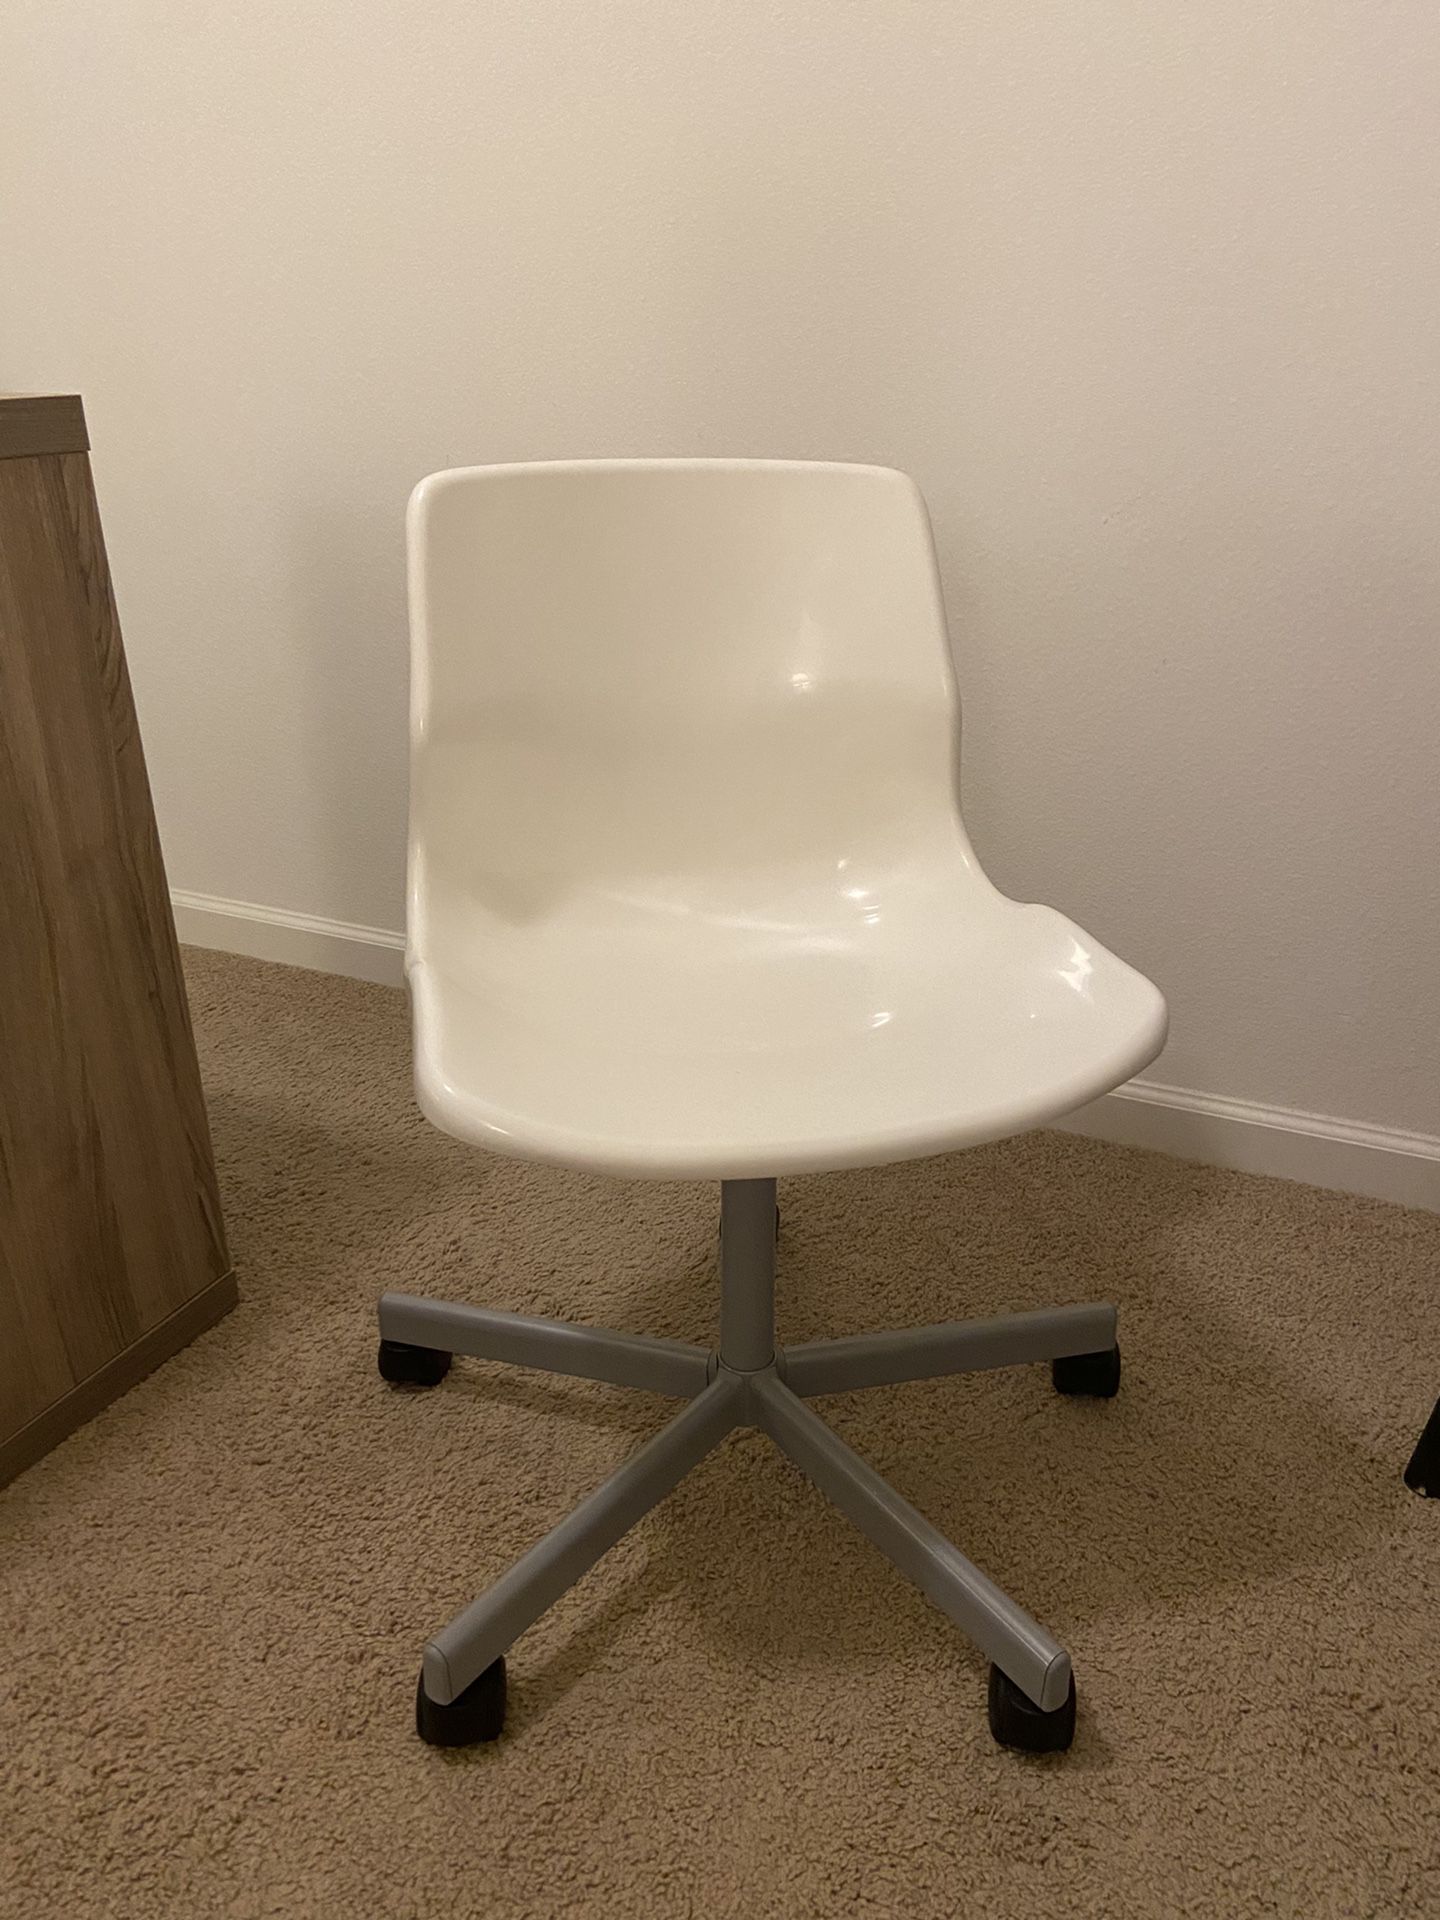 IKEA desk Chair 